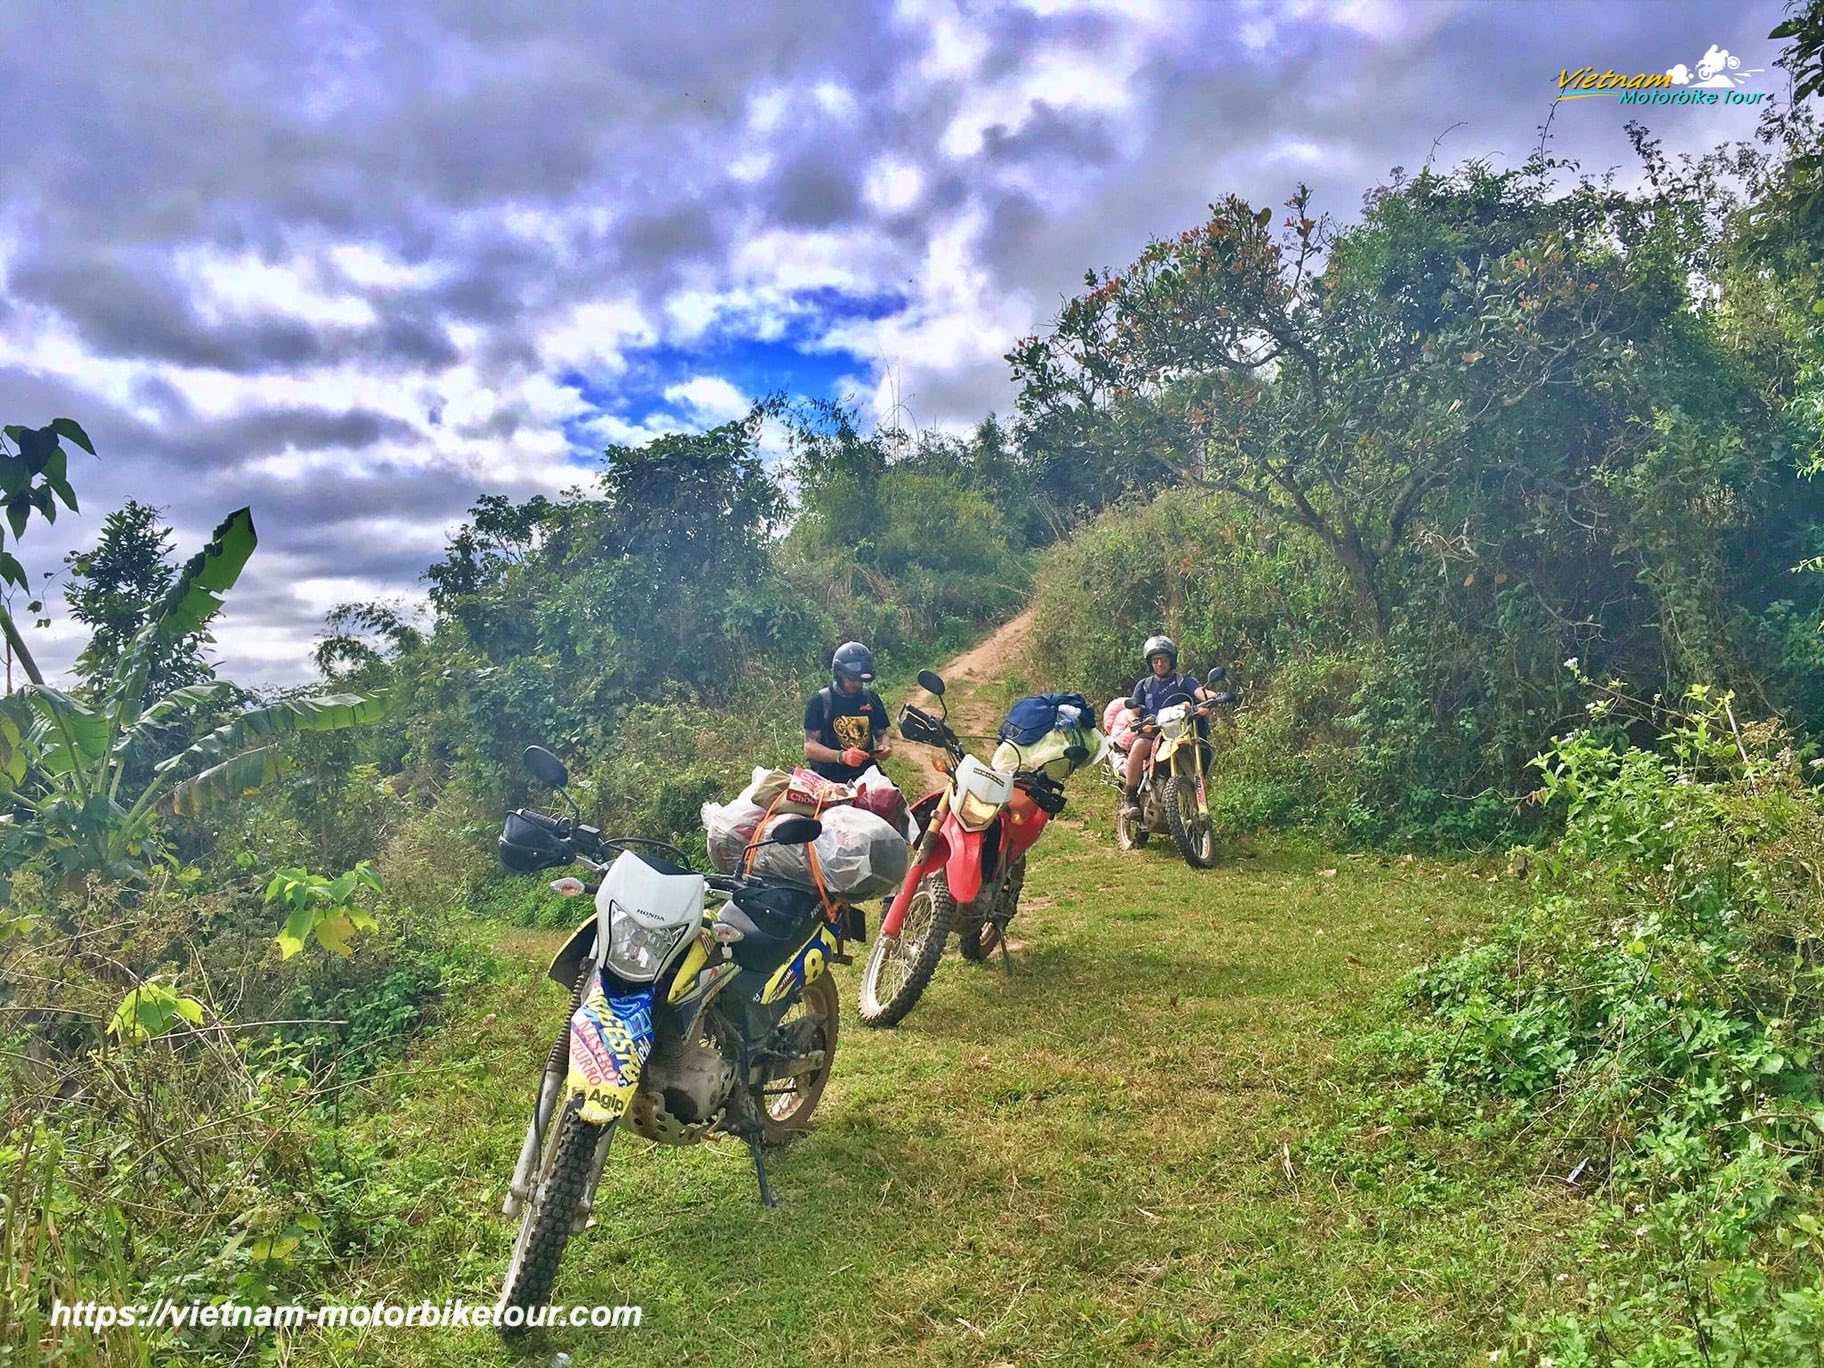 Hoi An motorbike tour to Kon Tum